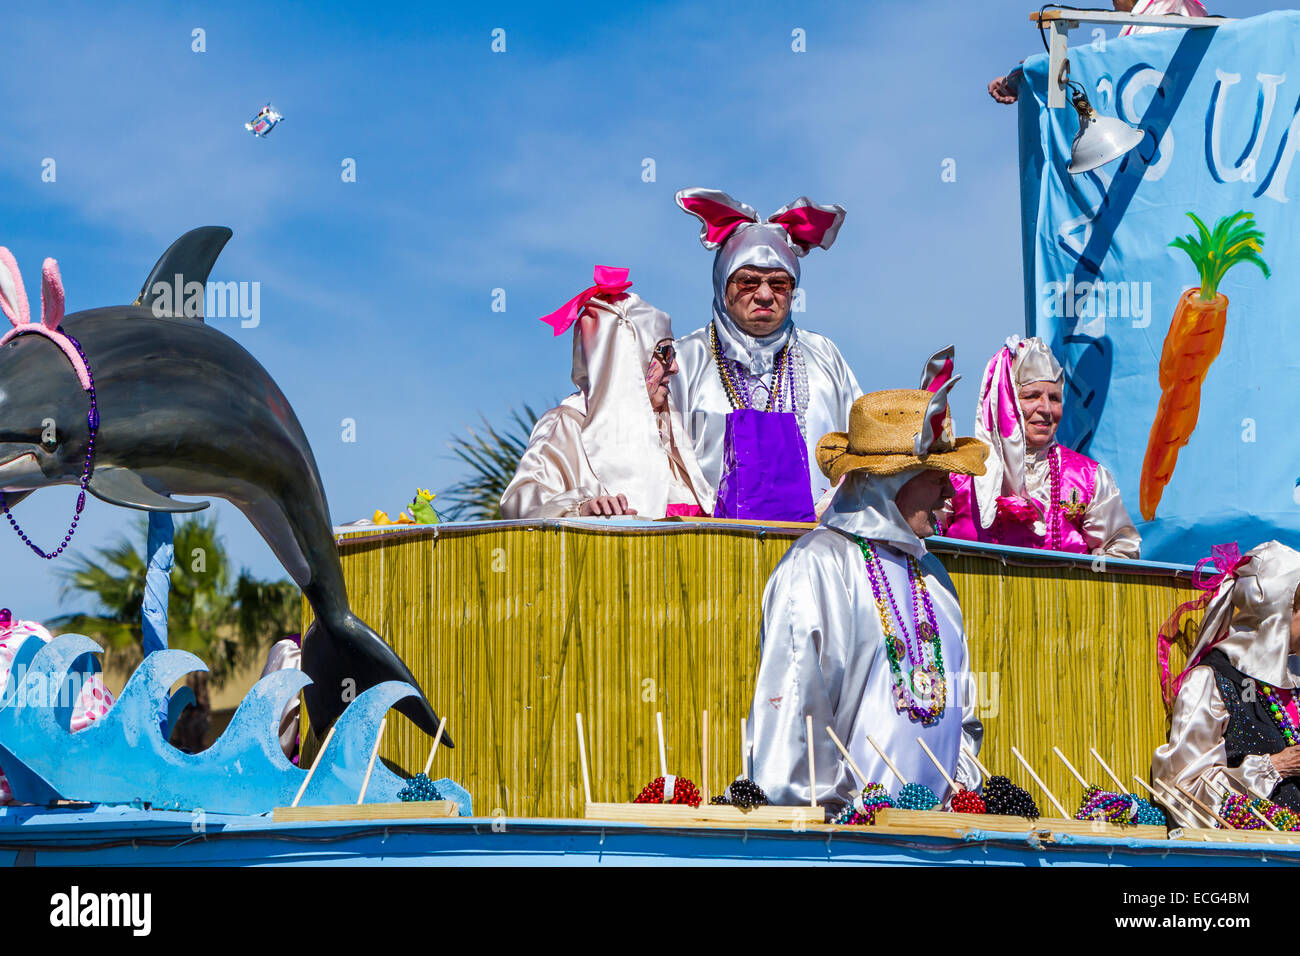 Mardi Gras celebrazioni e gaudenti in una sfilata per le strade di Galveston, Texas, Stati Uniti d'America. Foto Stock